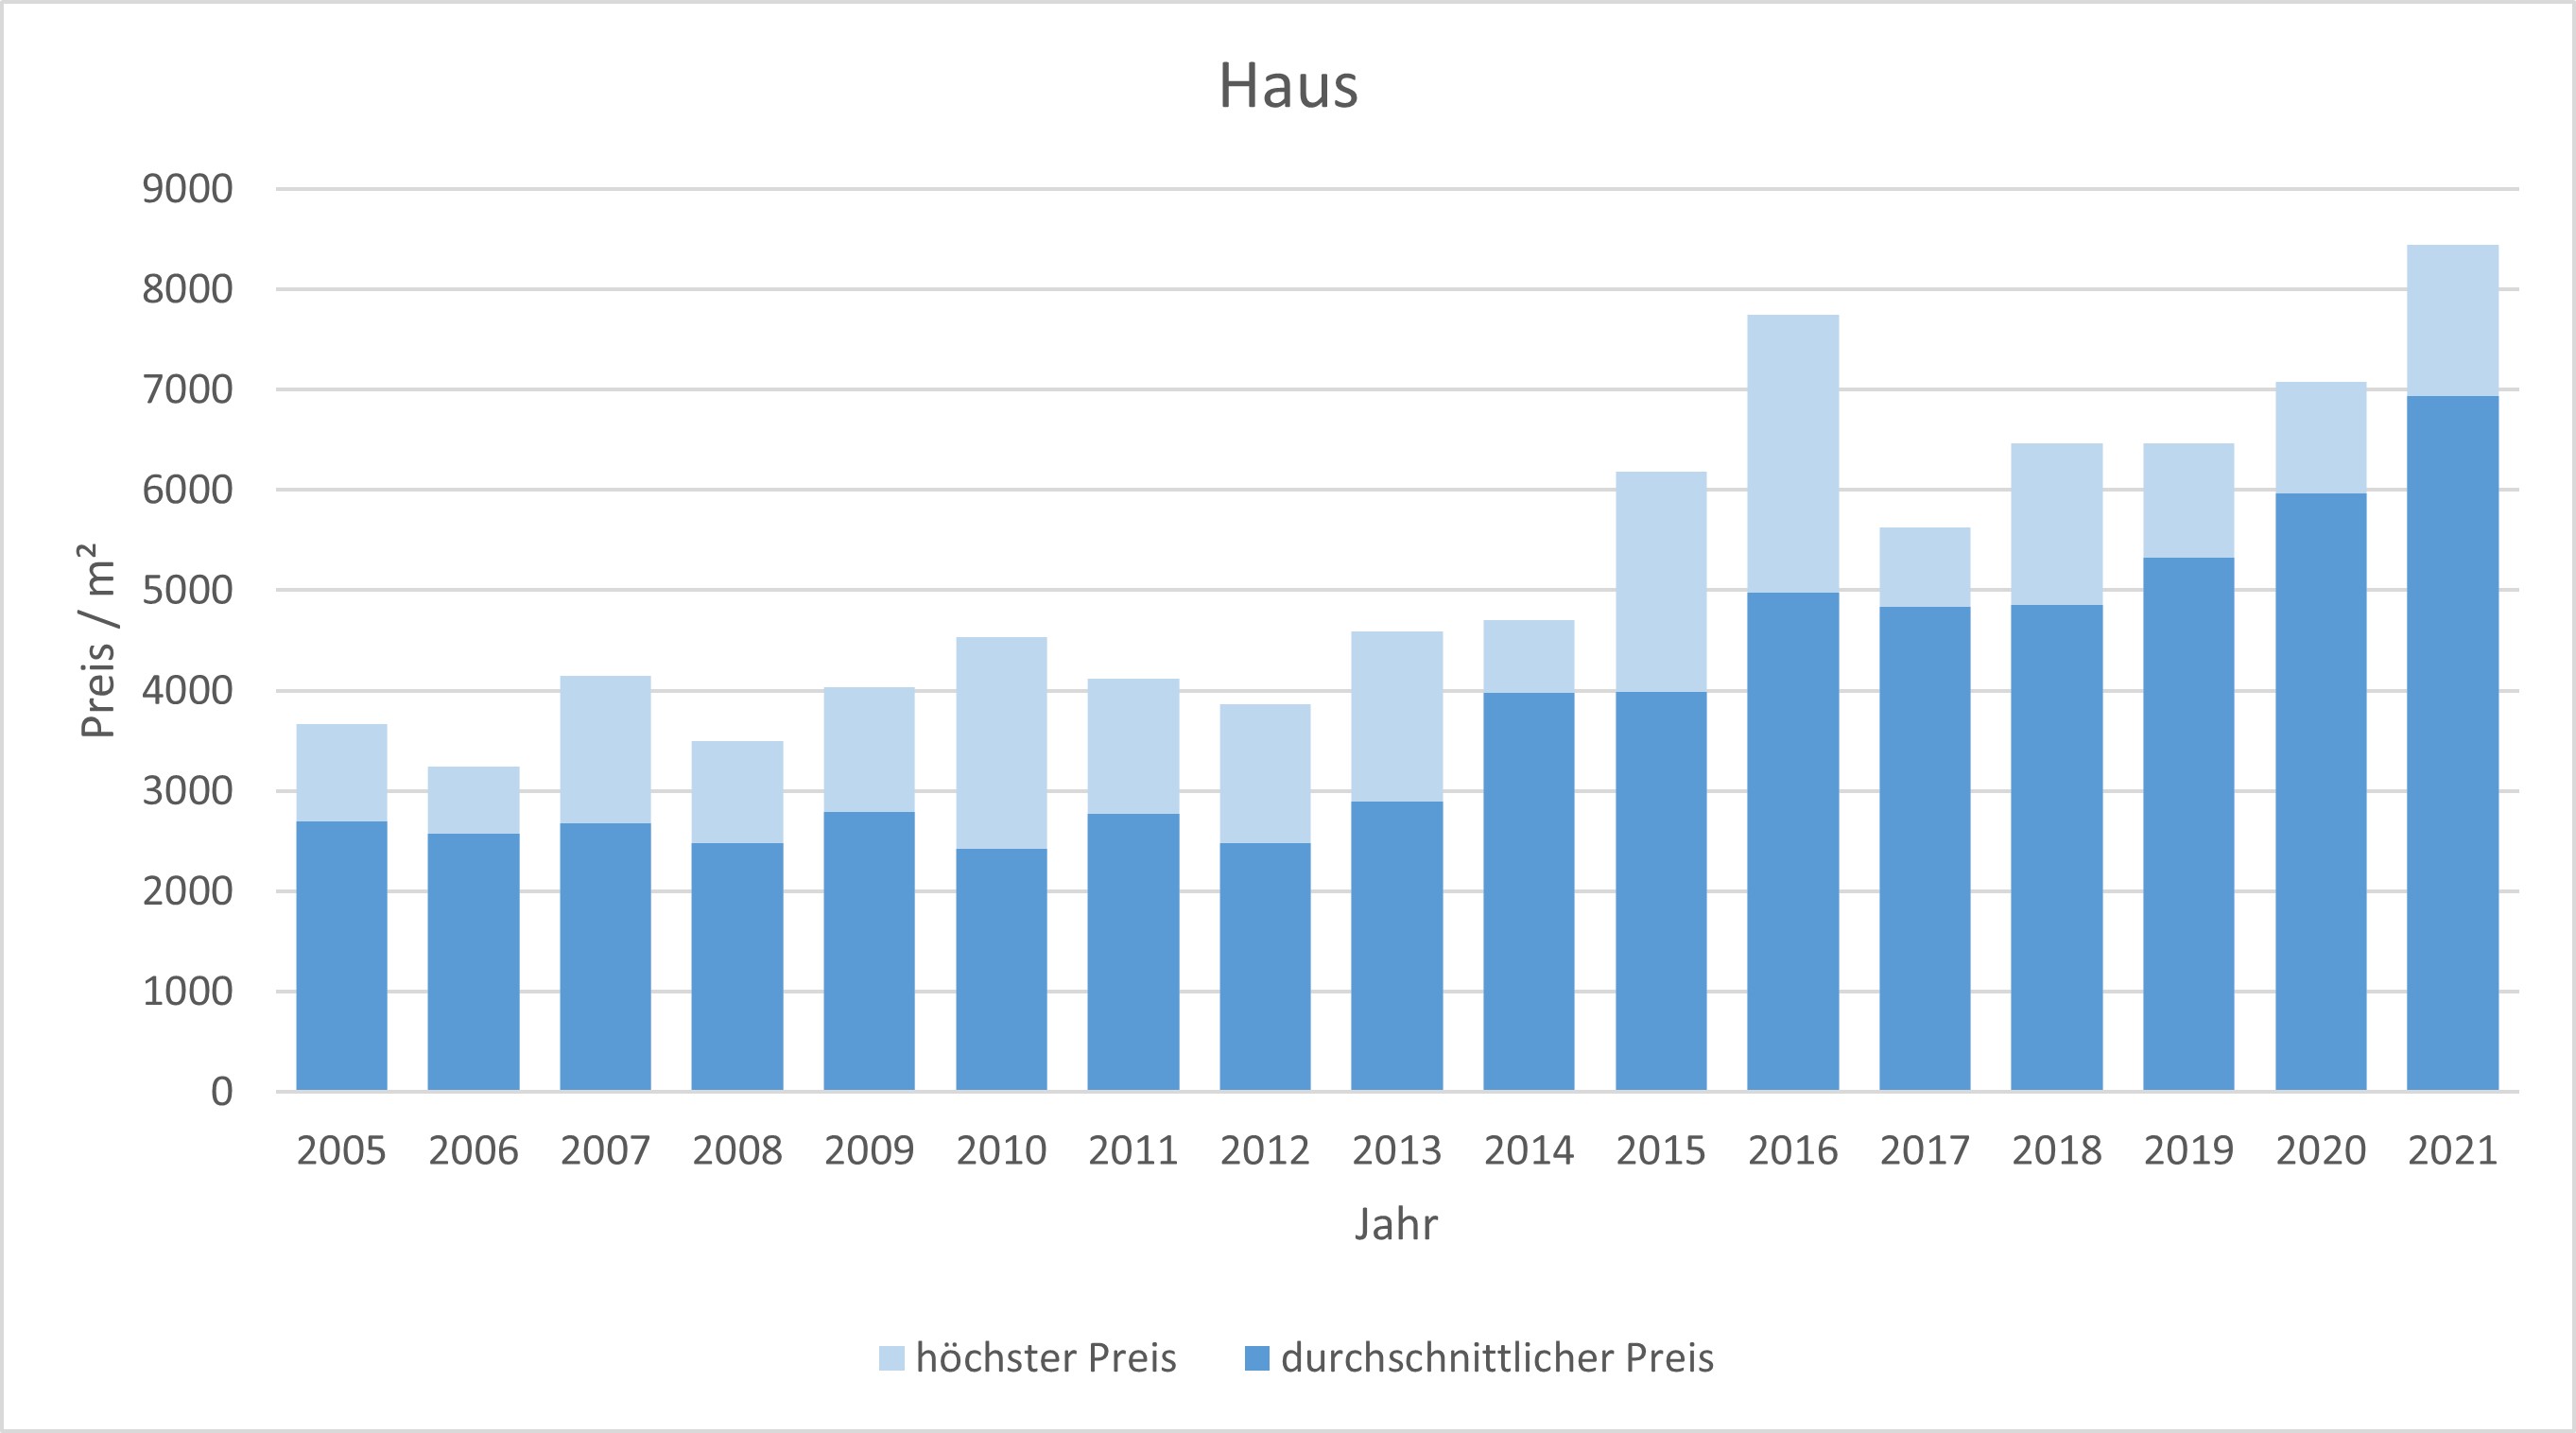 Anzing Makler Haus Kaufen Verkaufen Preis DHH EFH Reihenhaus 2019, 2020, 2021